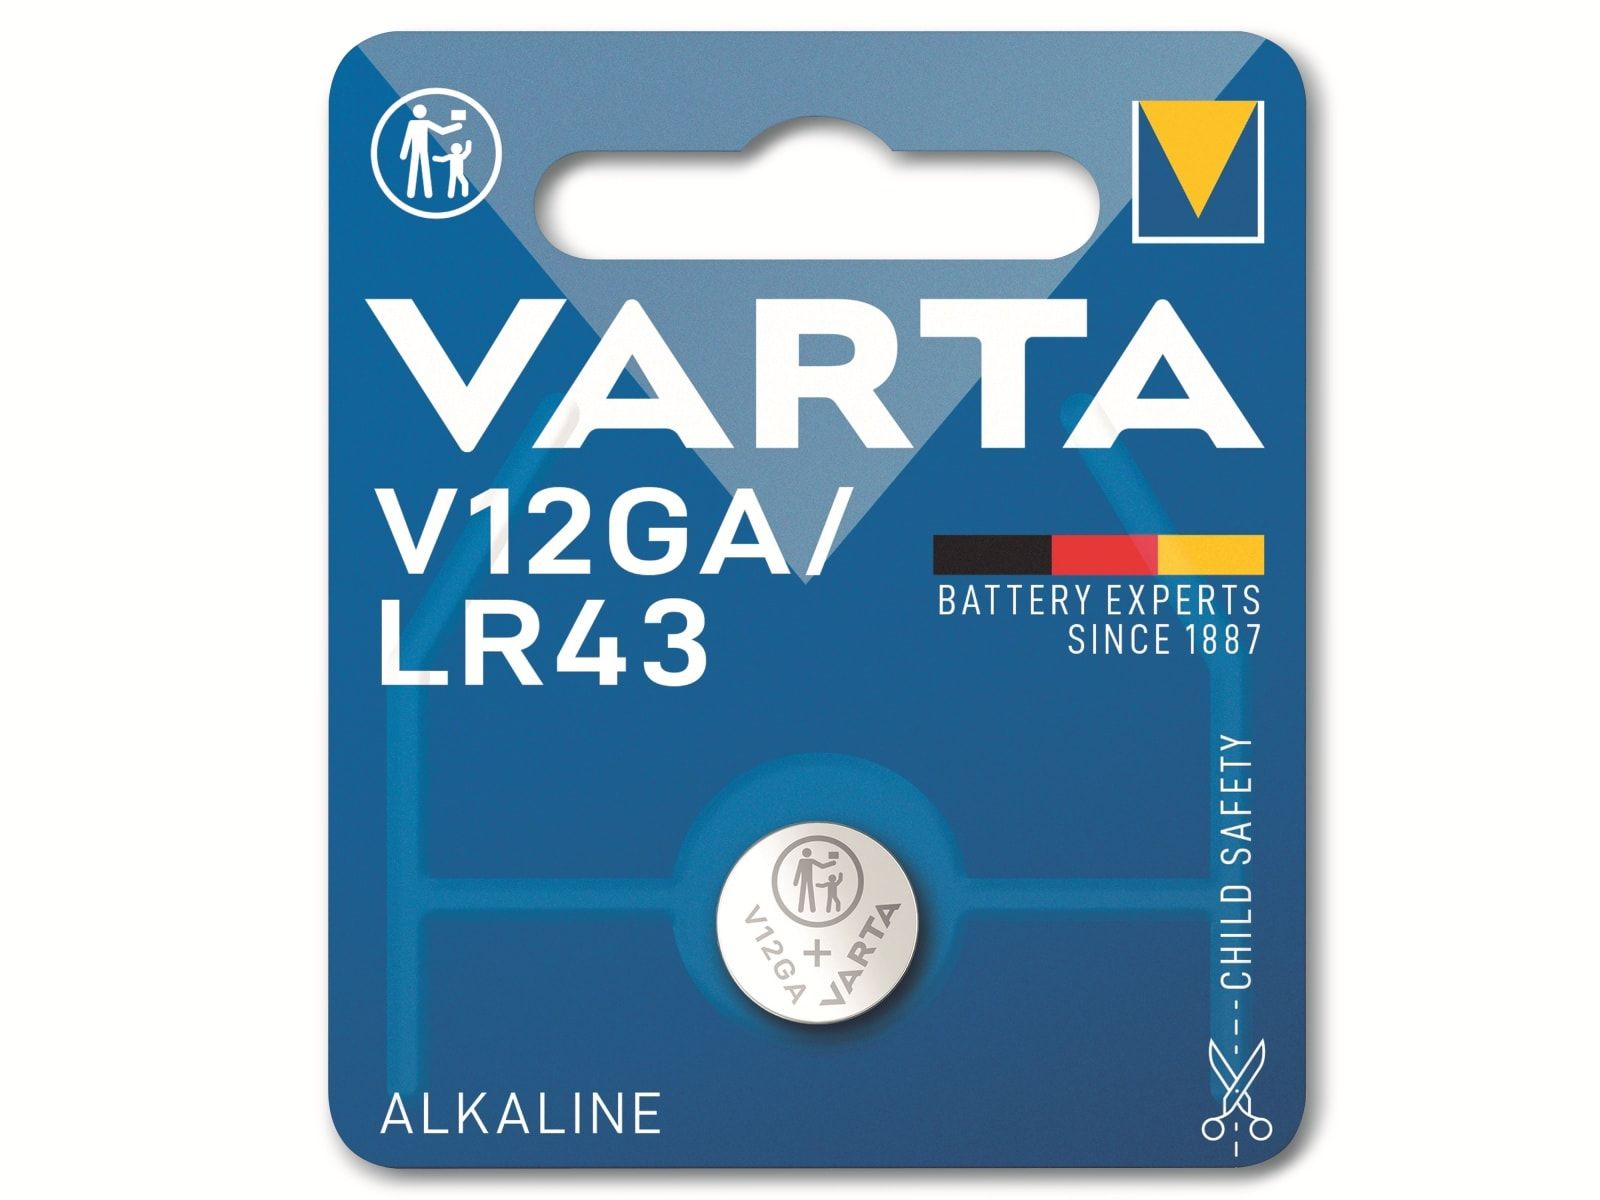 VARTA Knopfzelle Alkaline, LR43, 1.5V V12GA, 1.5V, 1 Stück von Varta